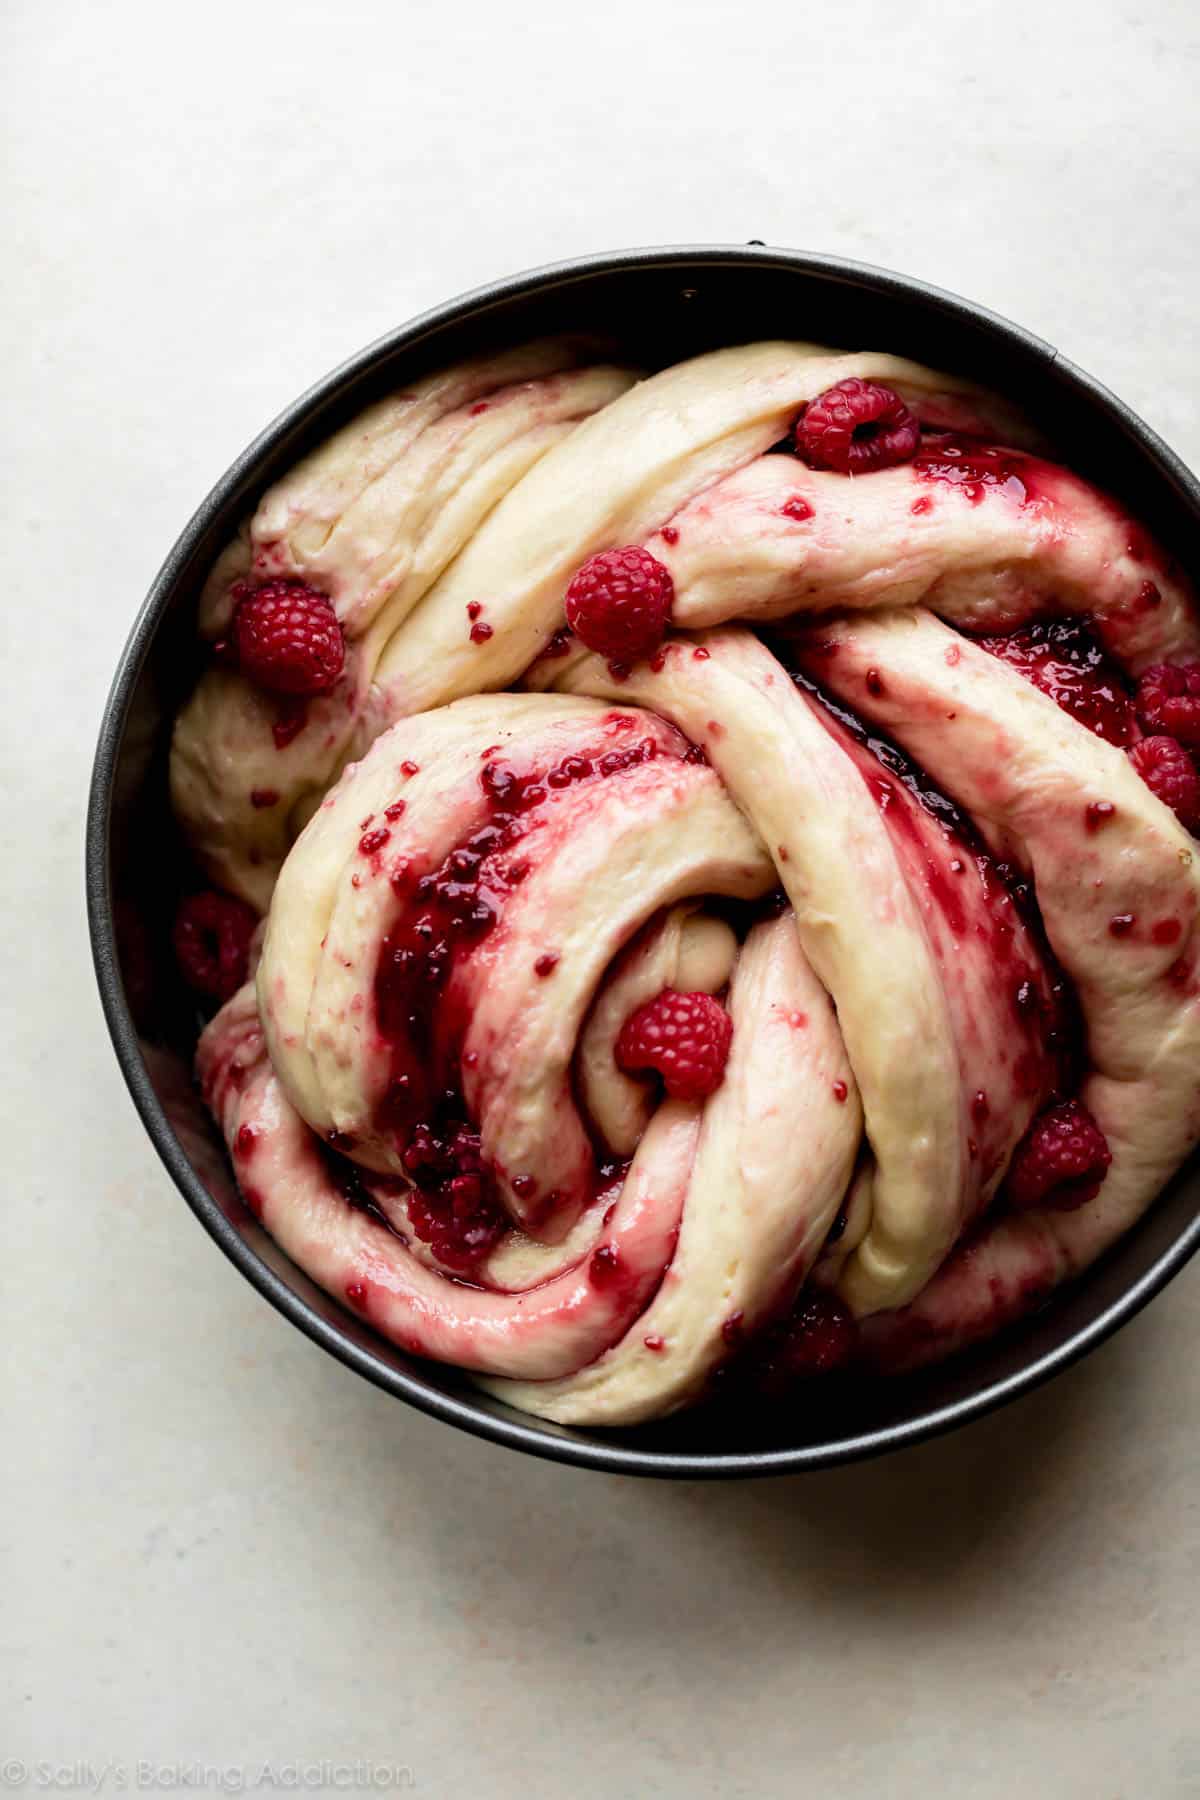 shaped raspberry danish twist dough in round pan before baking